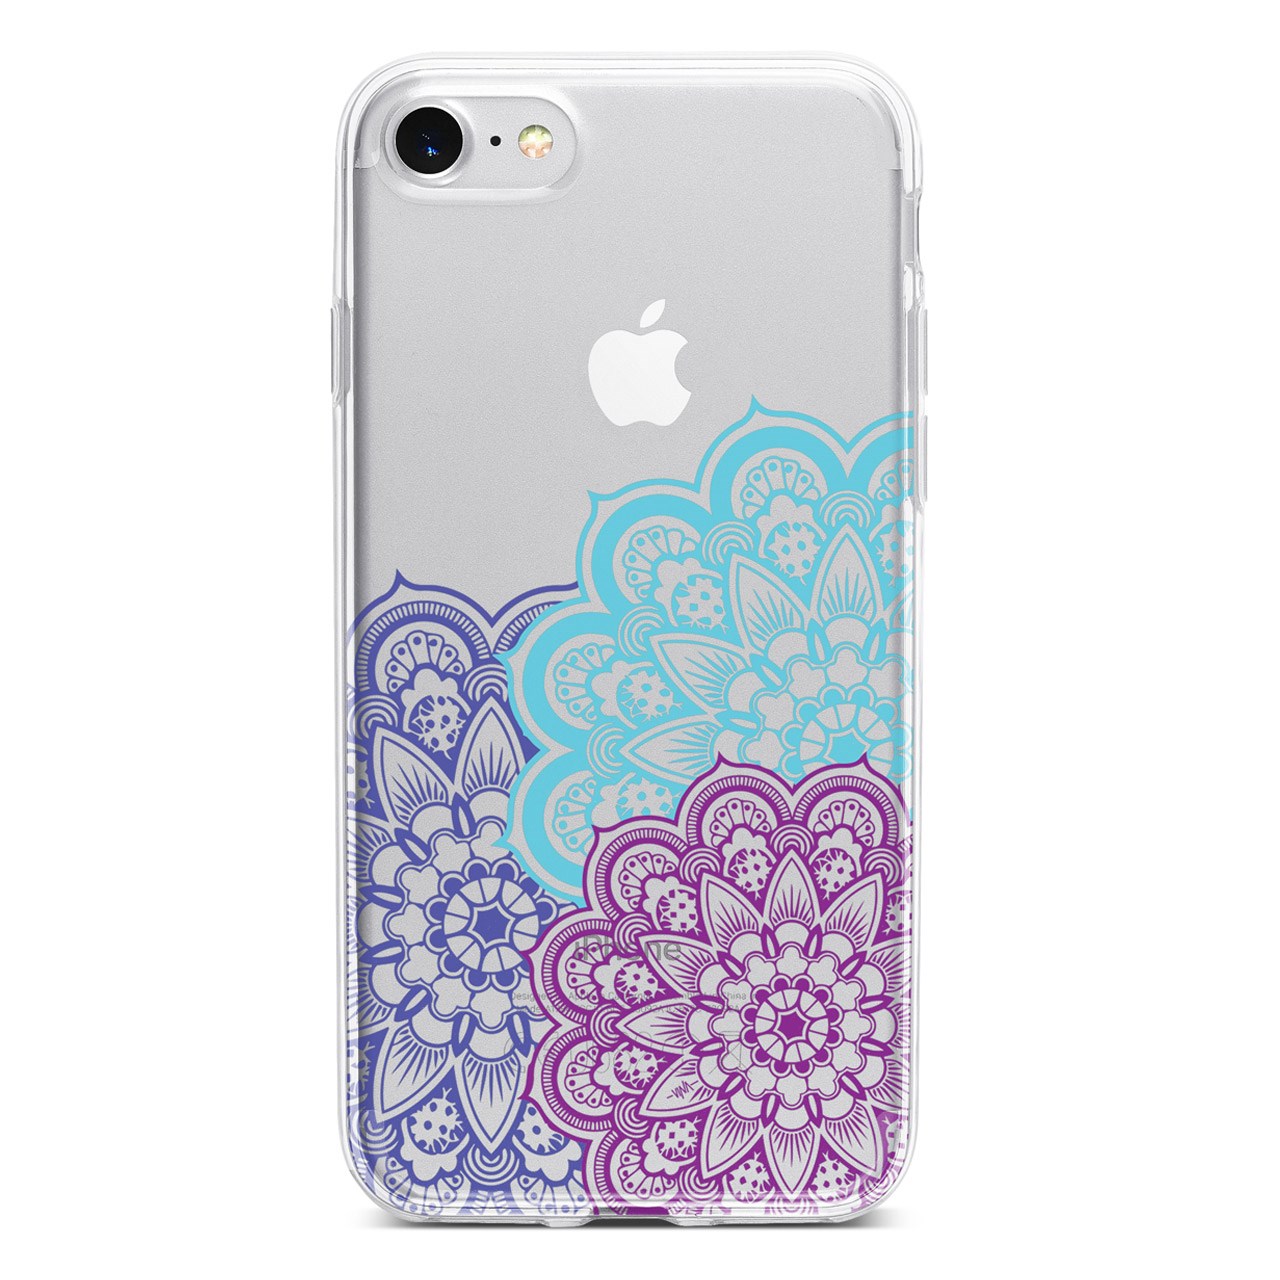 کاور  ژله ای مدل  Floral  مناسب برای گوشی موبایل آیفون 7 و 8